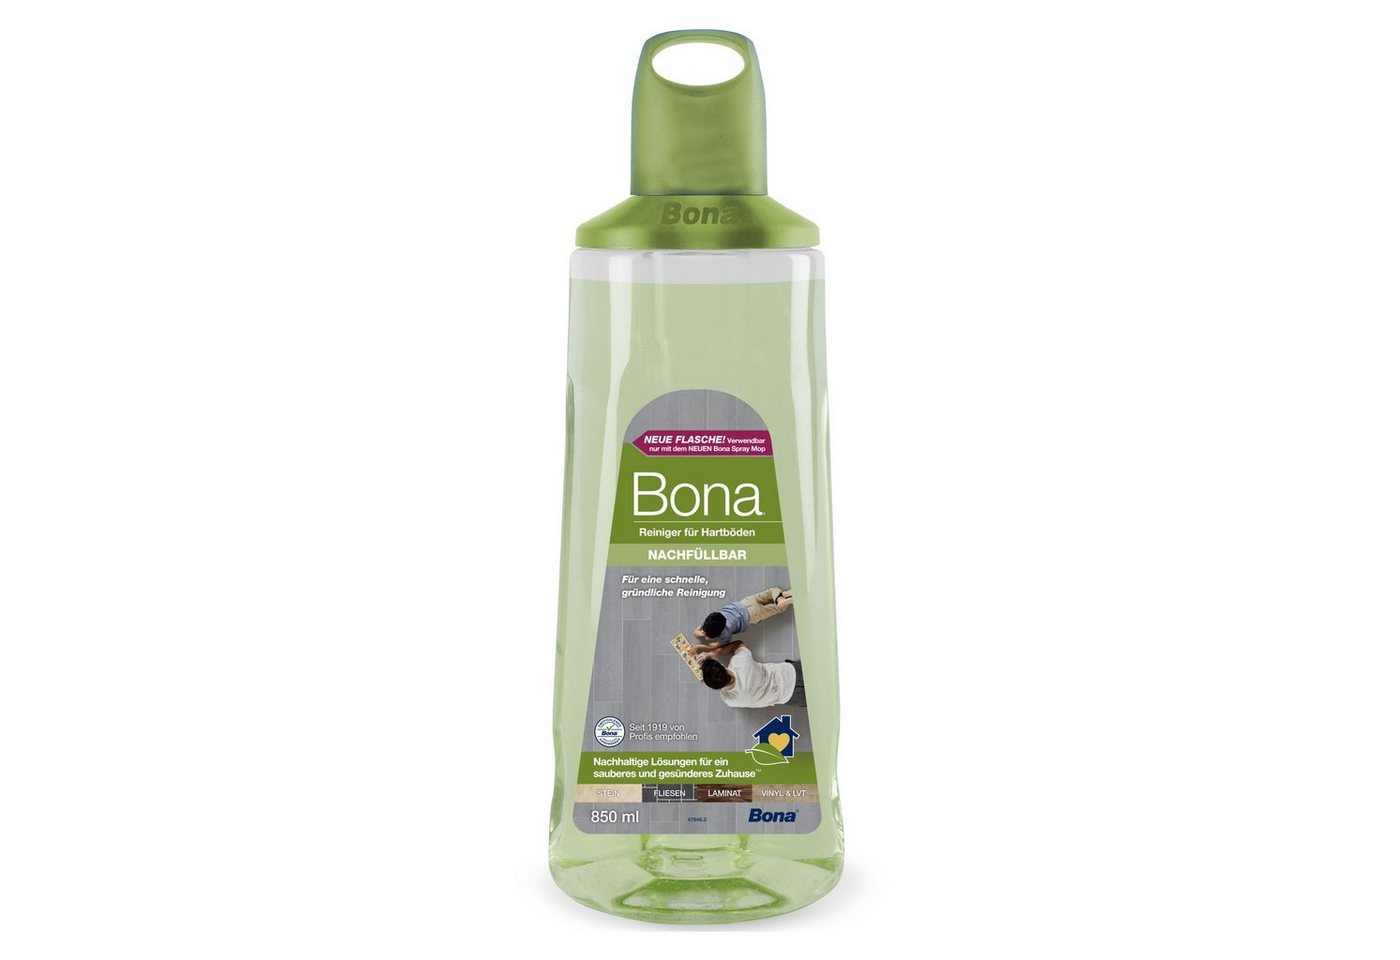 Bona Premium Spray Mop Nachfüllkartusche 850 ml Reiniger für Hartböden Fussbodenreiniger (Durchsichtig - damit man sofort weiß, wann nachgefüllt werden muss) von Bona